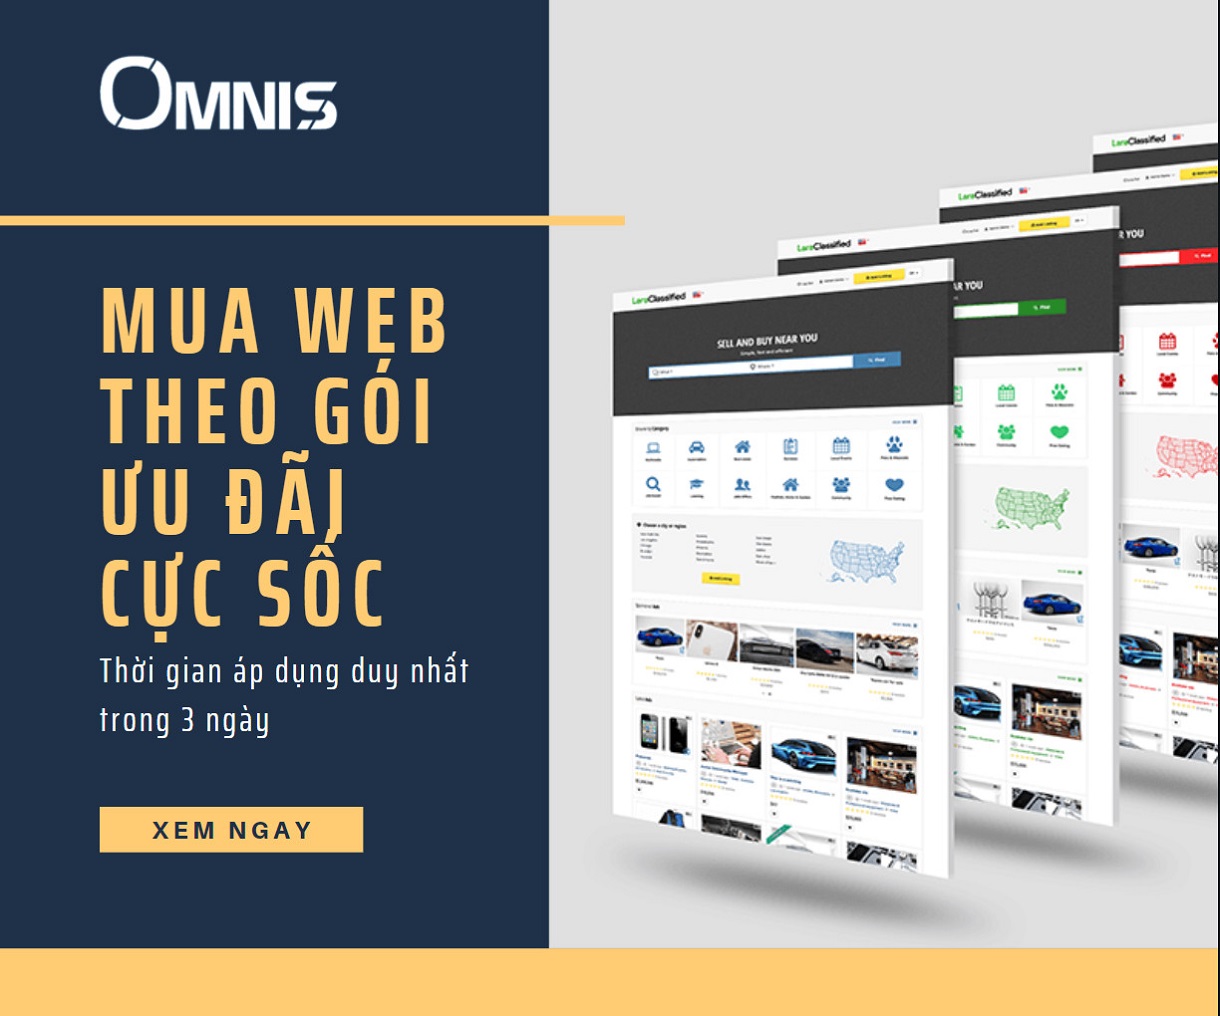 OMNIS- công ty thiết kế website chuyên nghiệp, uy tín